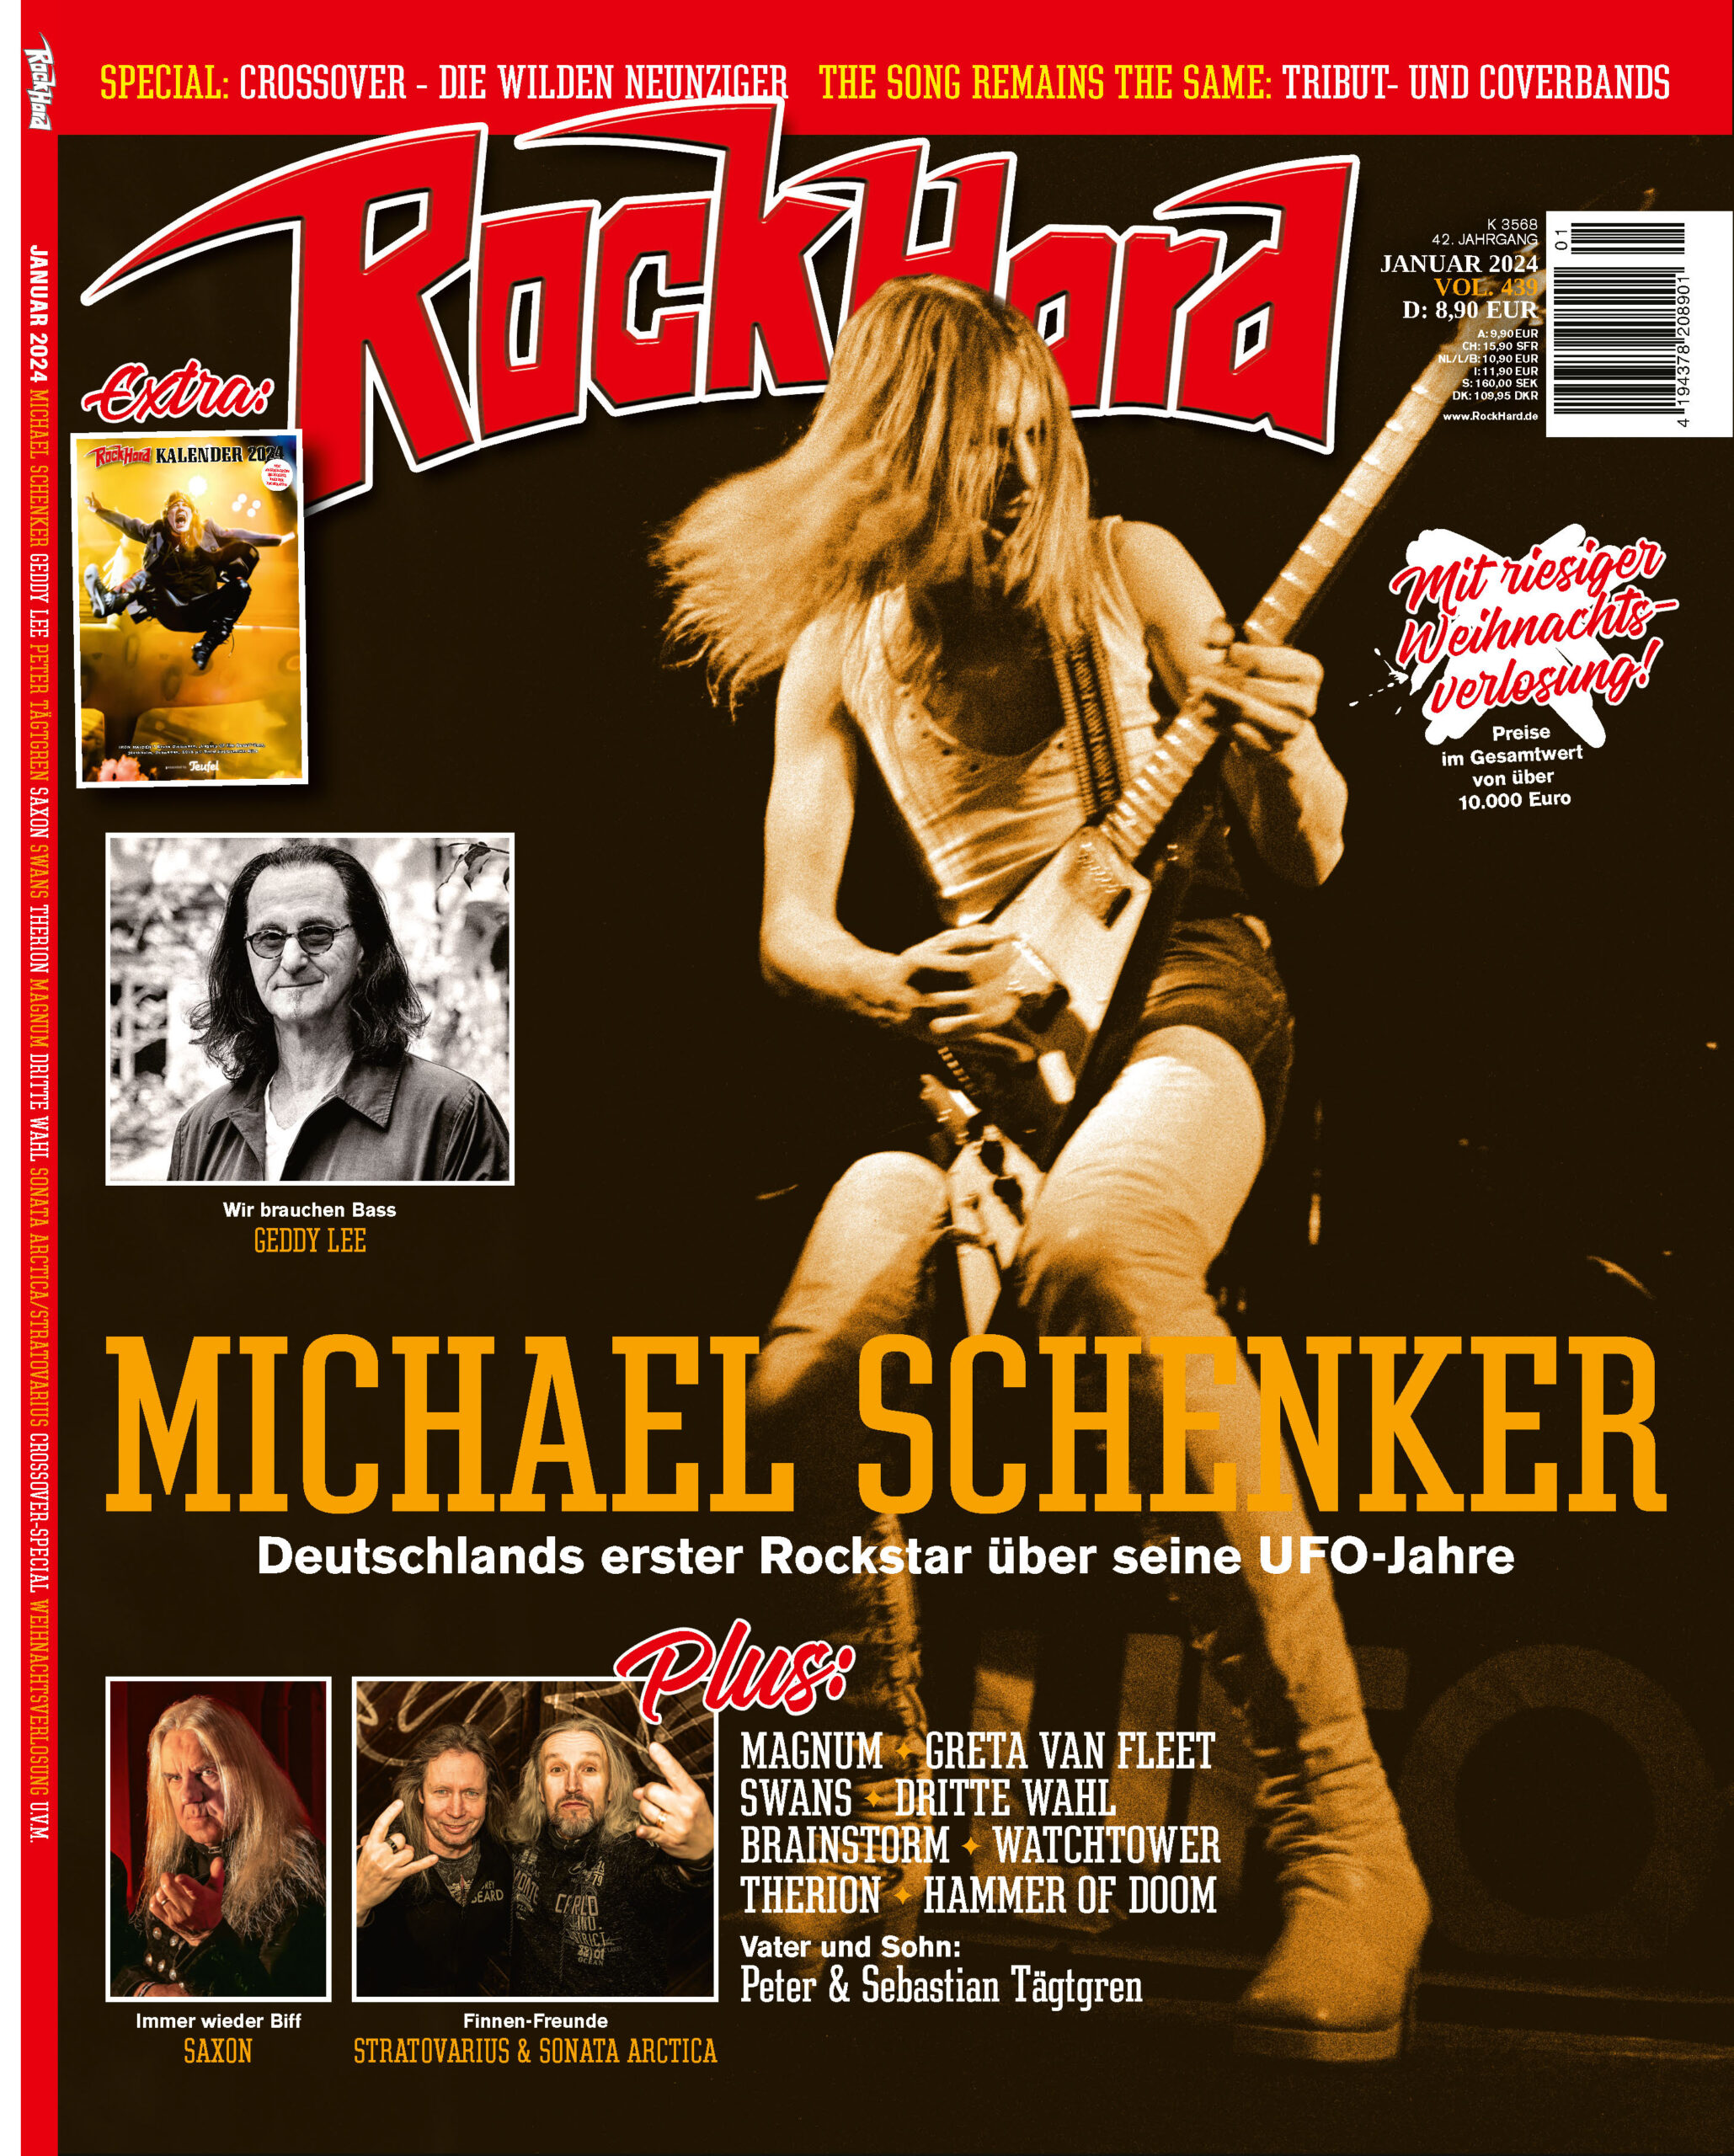 www.rockhard.de